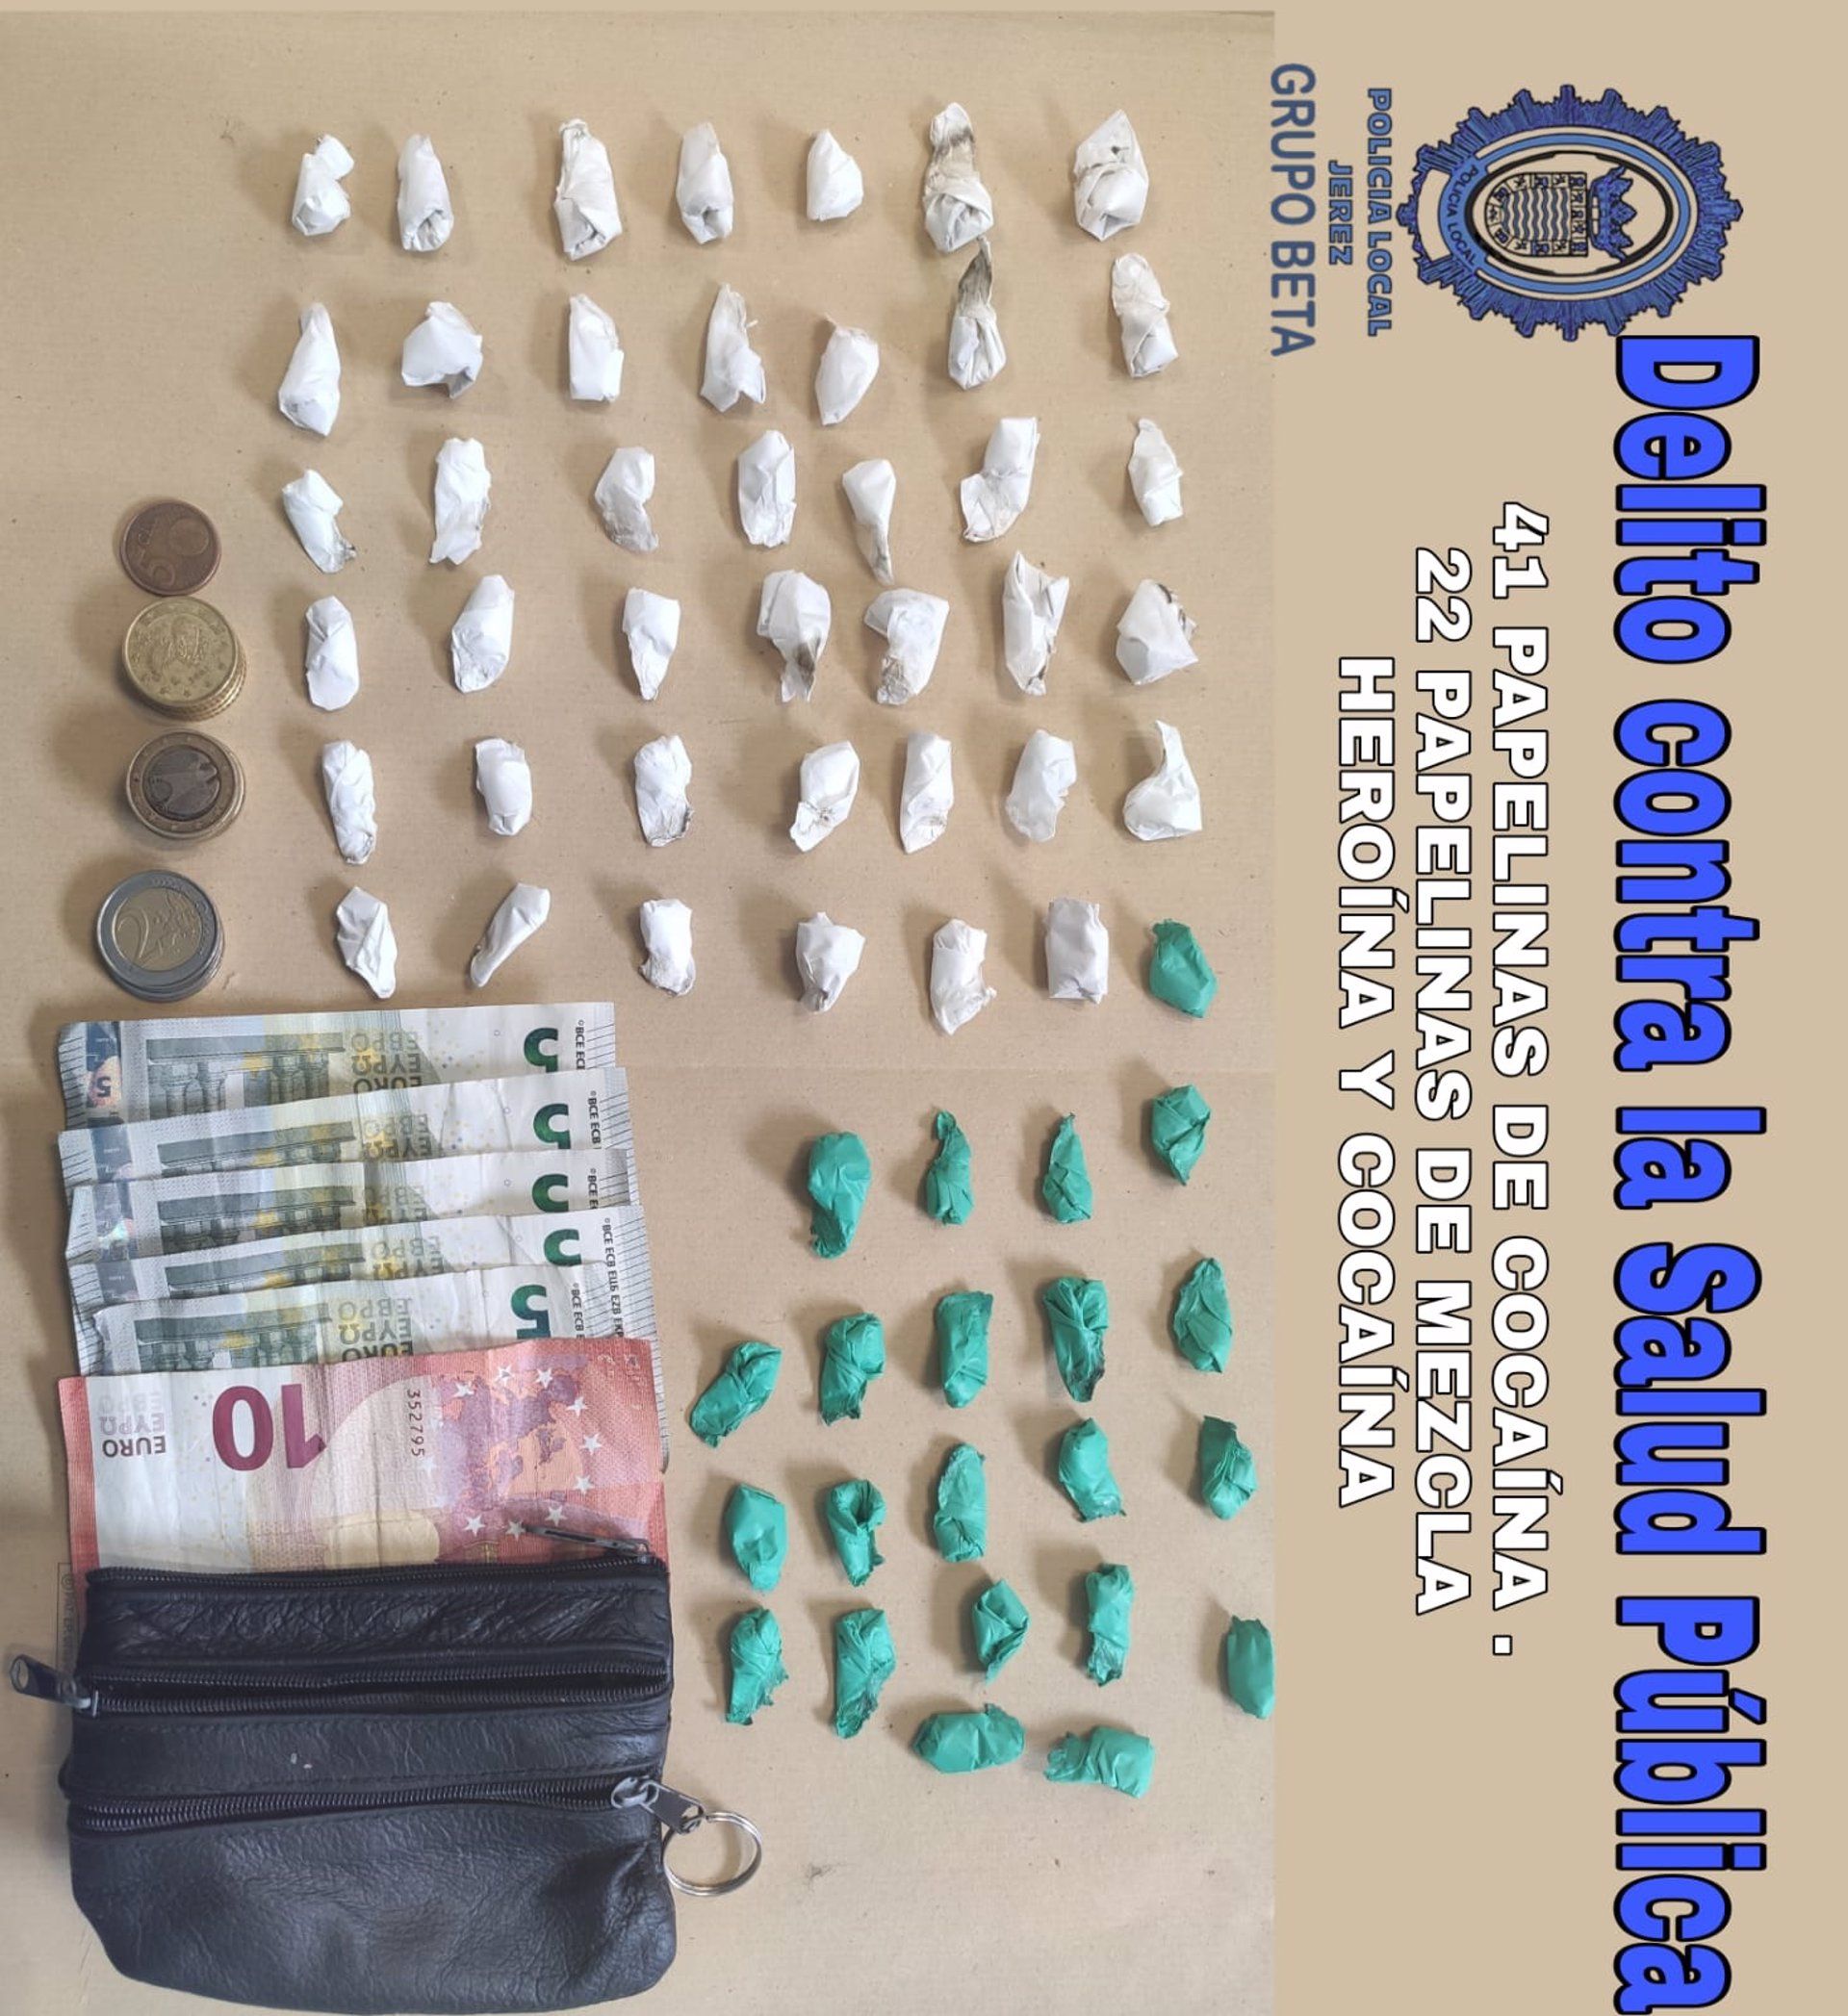 Sorprendidos 'in fraganti' comprando y vendiendo coca y heroína en San Telmo. Papelinas y dinero intervenido por la Policía Local.